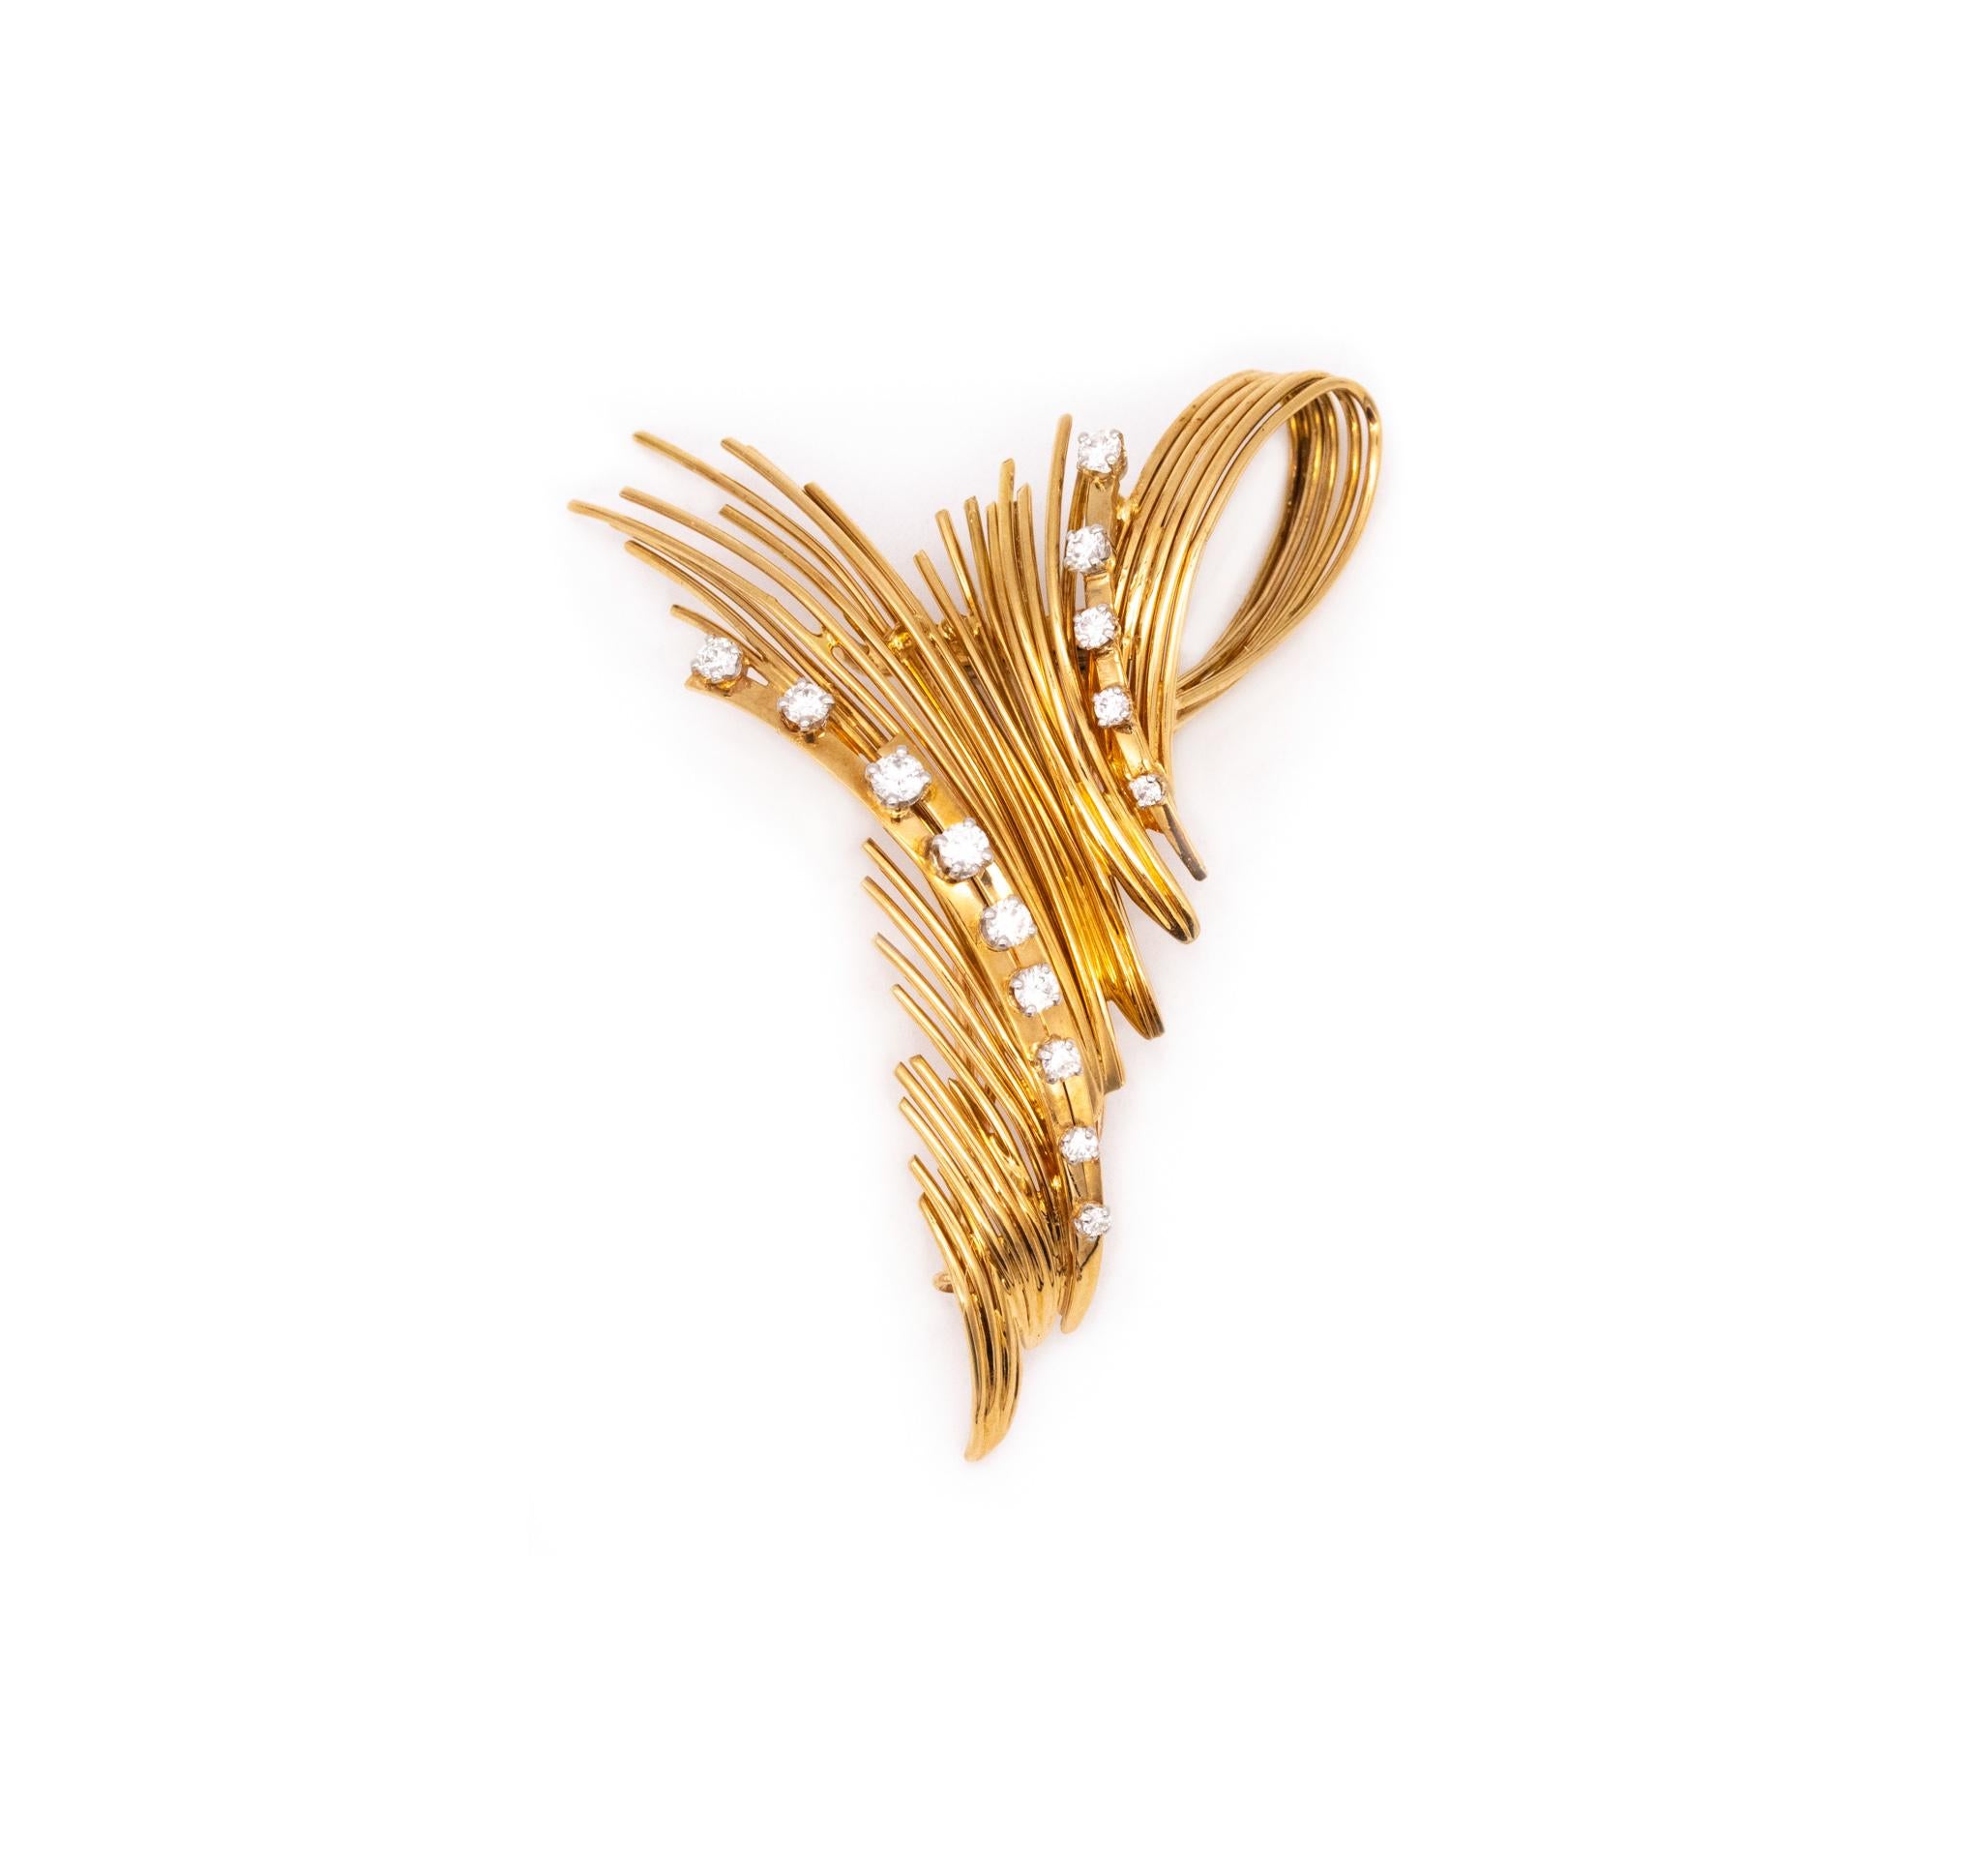 Une broche conçue par George L'Enfant.

Belle pièce créée à Paris, dans l'atelier de George L'Enfant, à la fin des années 1960. Cette broche a été réalisée en or jaune massif de 18 carats, avec des montures à quatre griffes en or blanc. Le revers